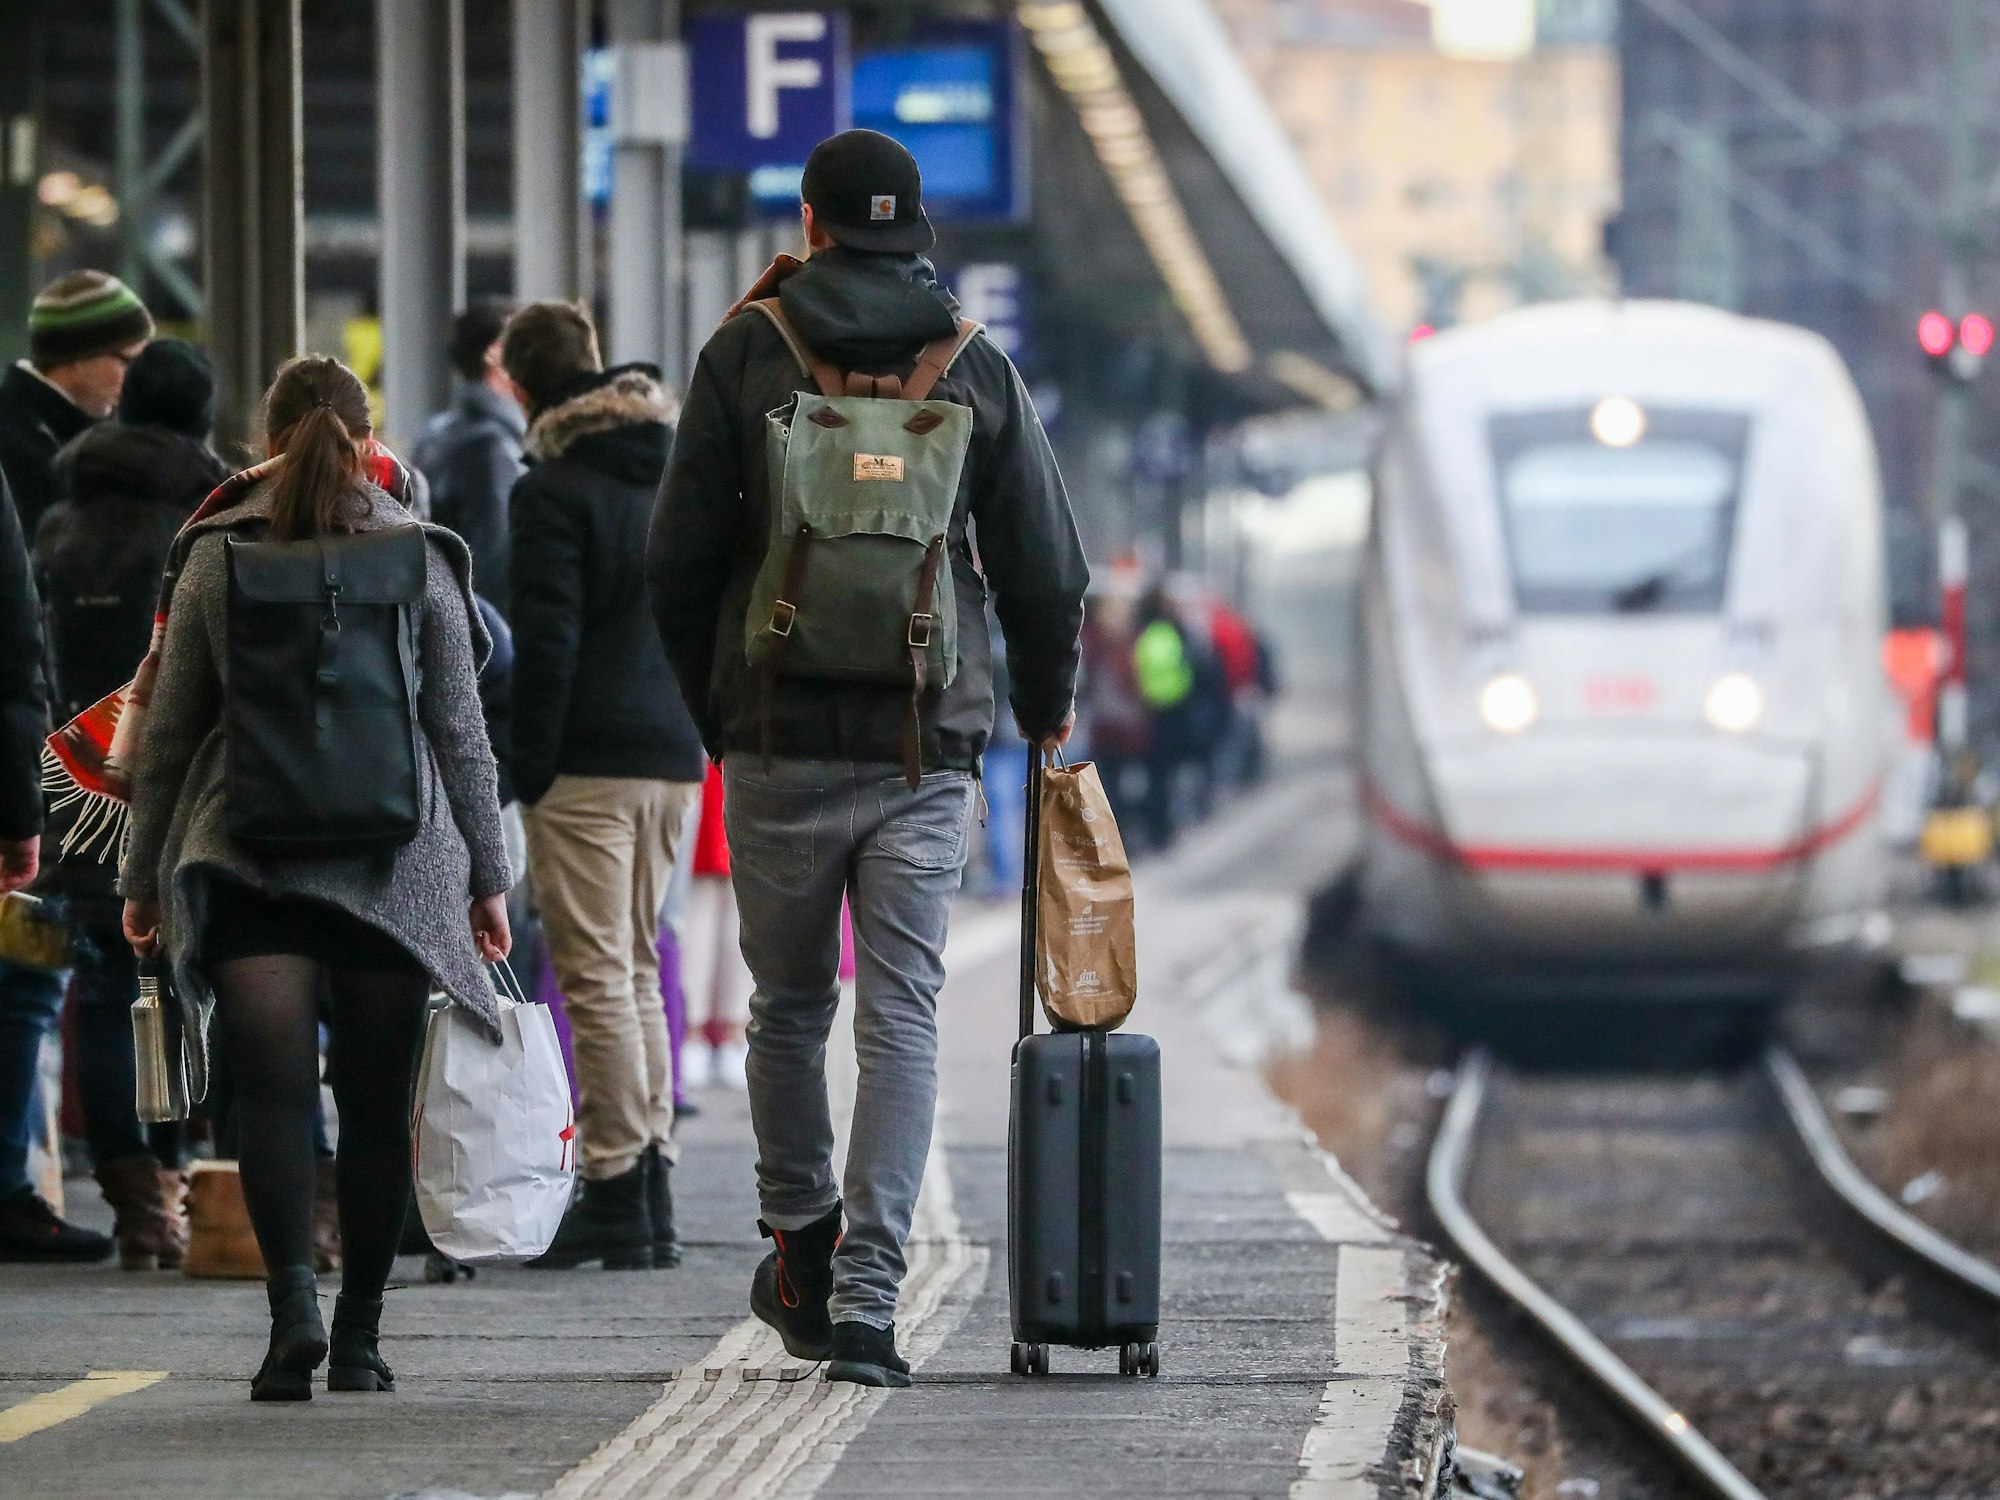 Hier zu sehen, mehrere Personen mit Gepäck auf einem Bahnsteig. Im Hintergrund wartet ein ICE.